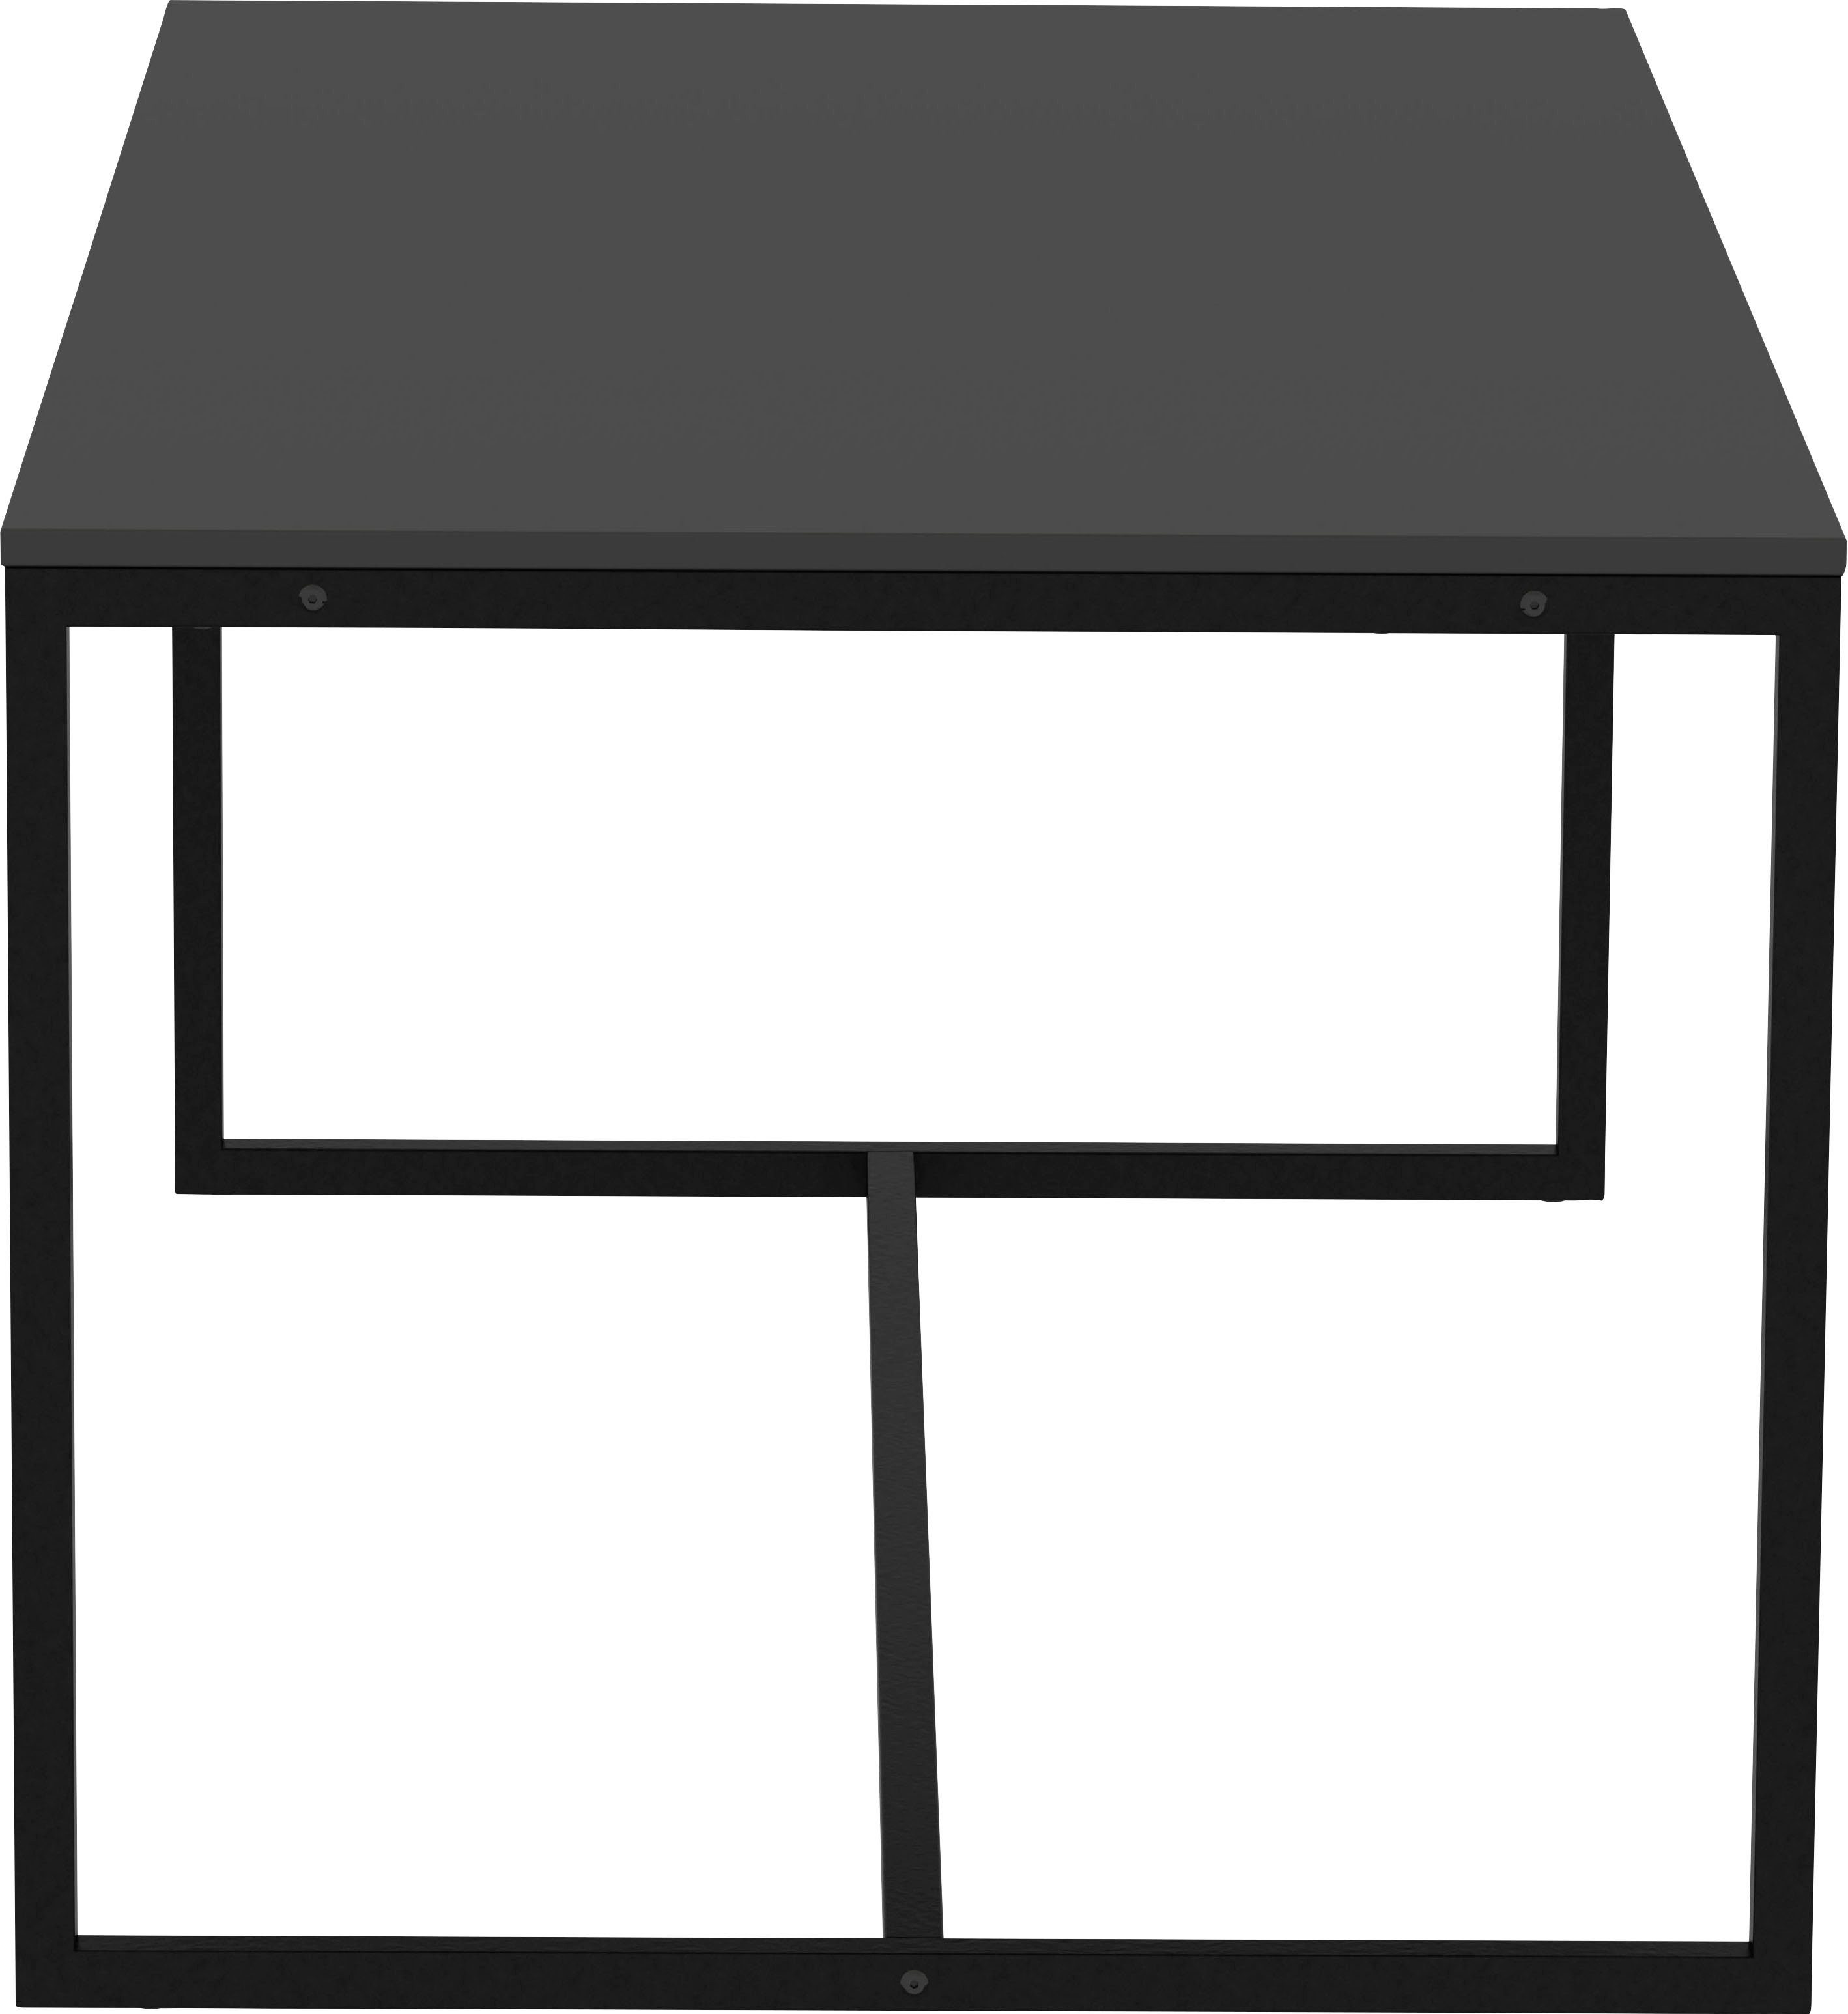 Tenzo schwarz | Design Design shadow LIPP, shadow Esstisch von Tenzo Breite 180 cm schwarz studio,